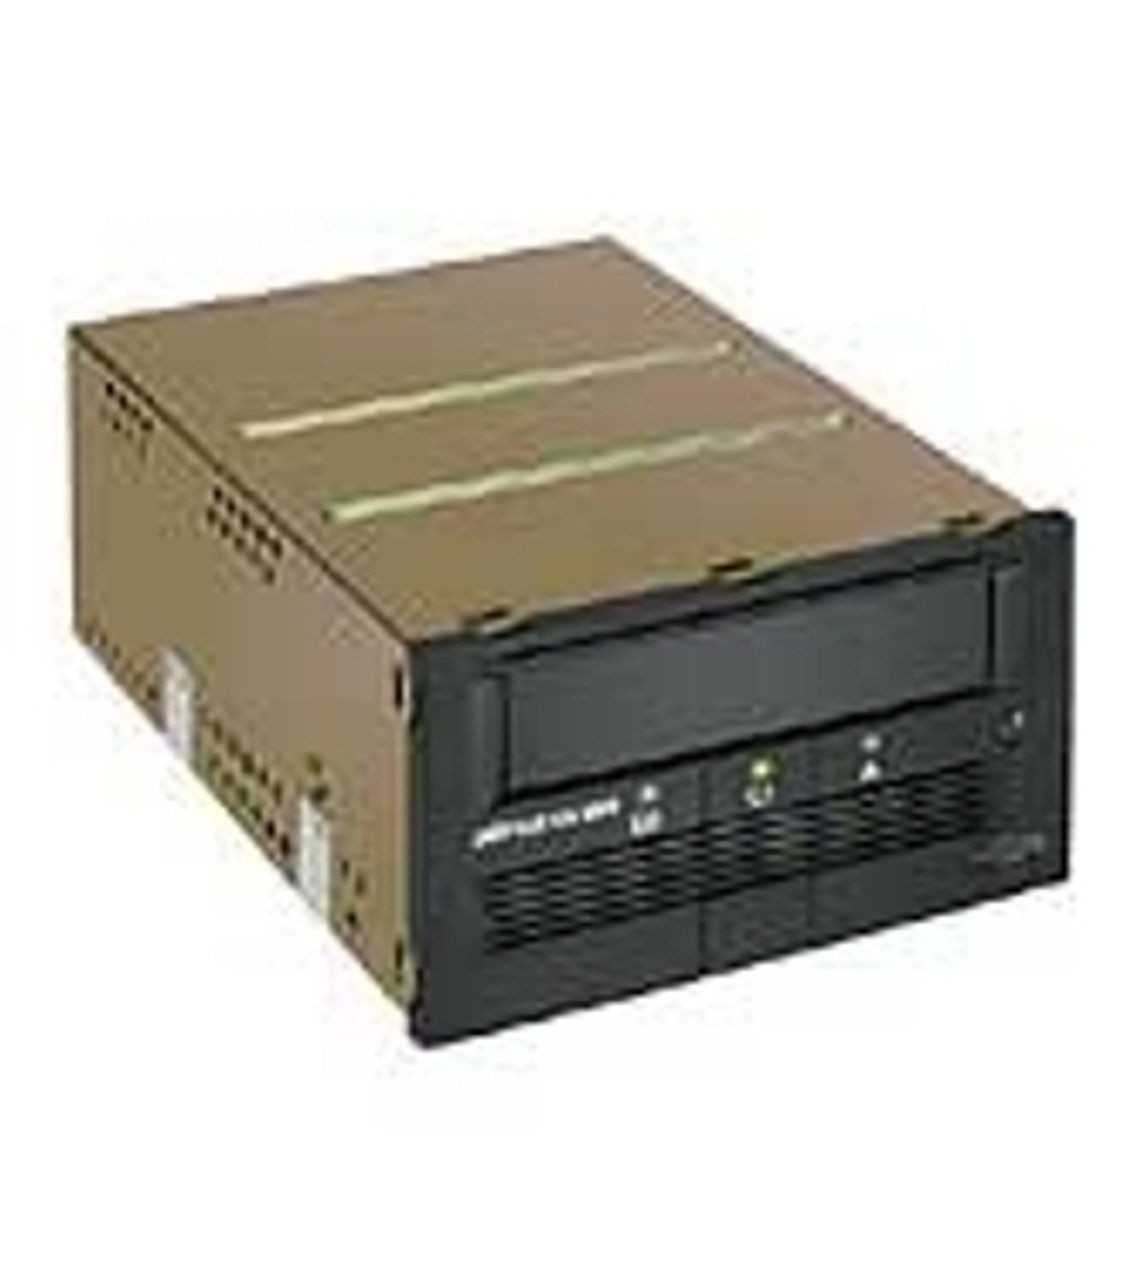 257319-B21 - Compaq StorageWorks 257319-B21 SDLT Internal Tape Drive - 160GB (Native)/320GB (Compressed) - 5.25 Internal